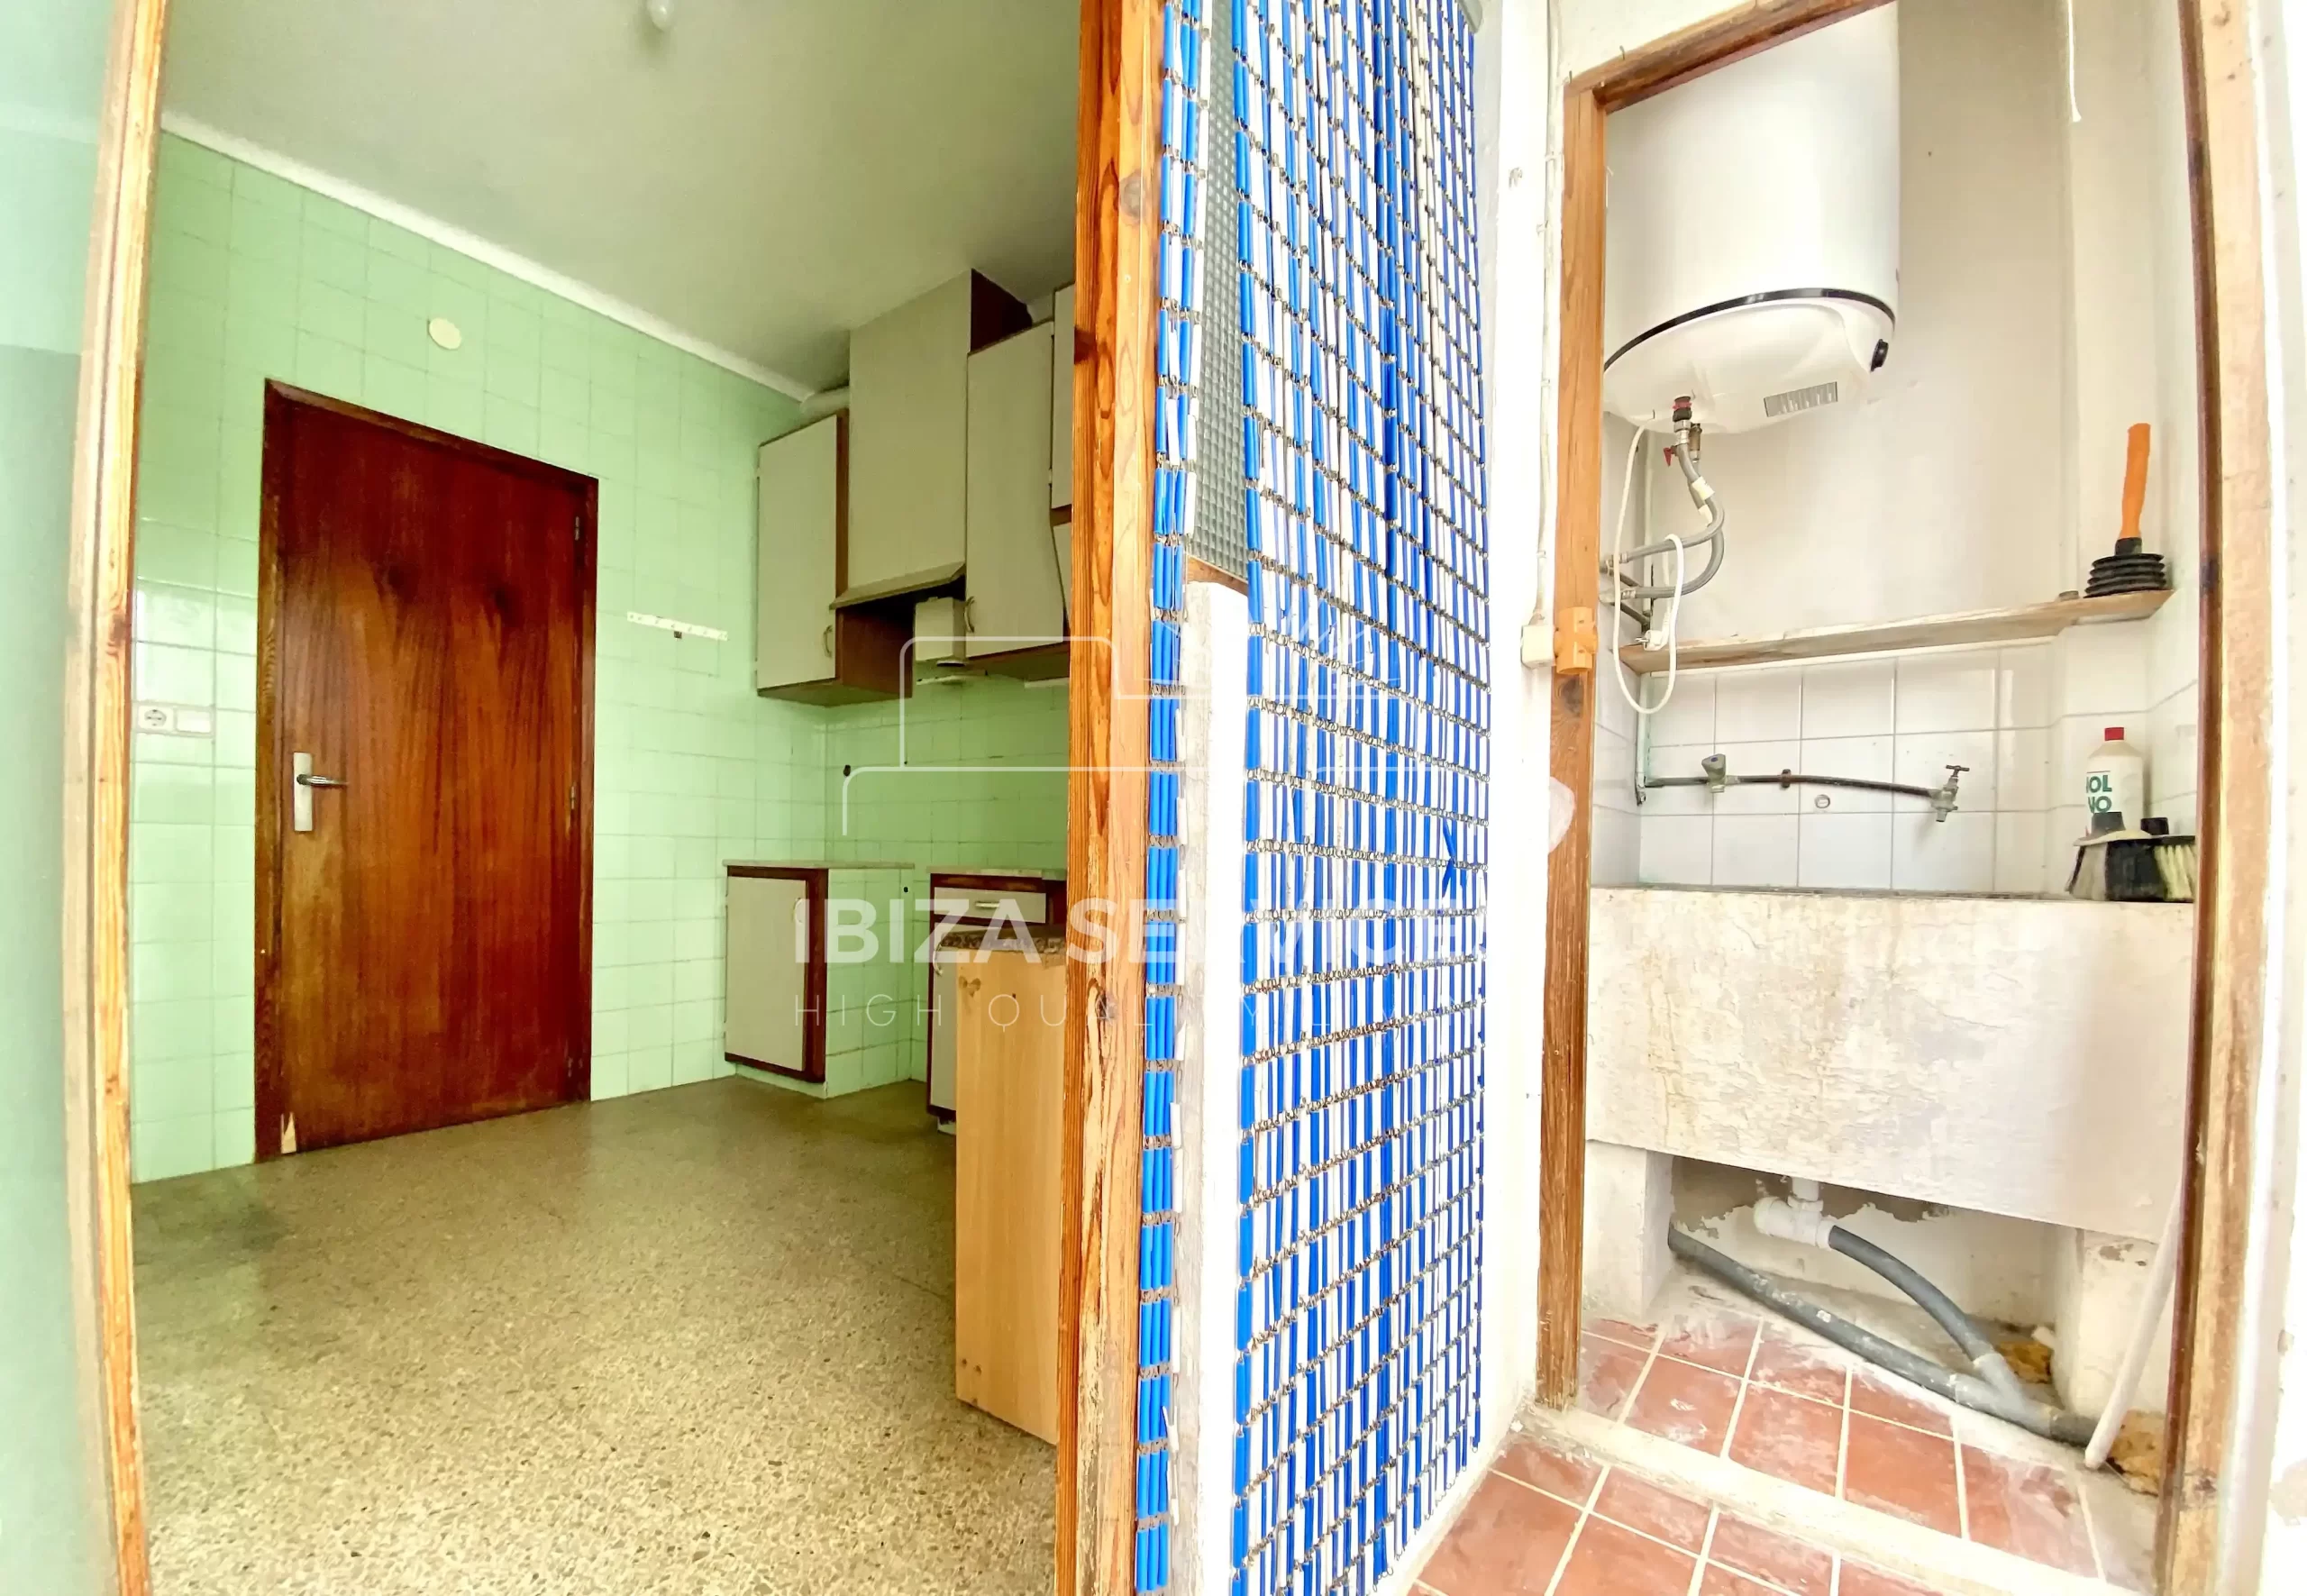 En venta apartamento de 3 dormitorios a reformar en Ibiza ciudad